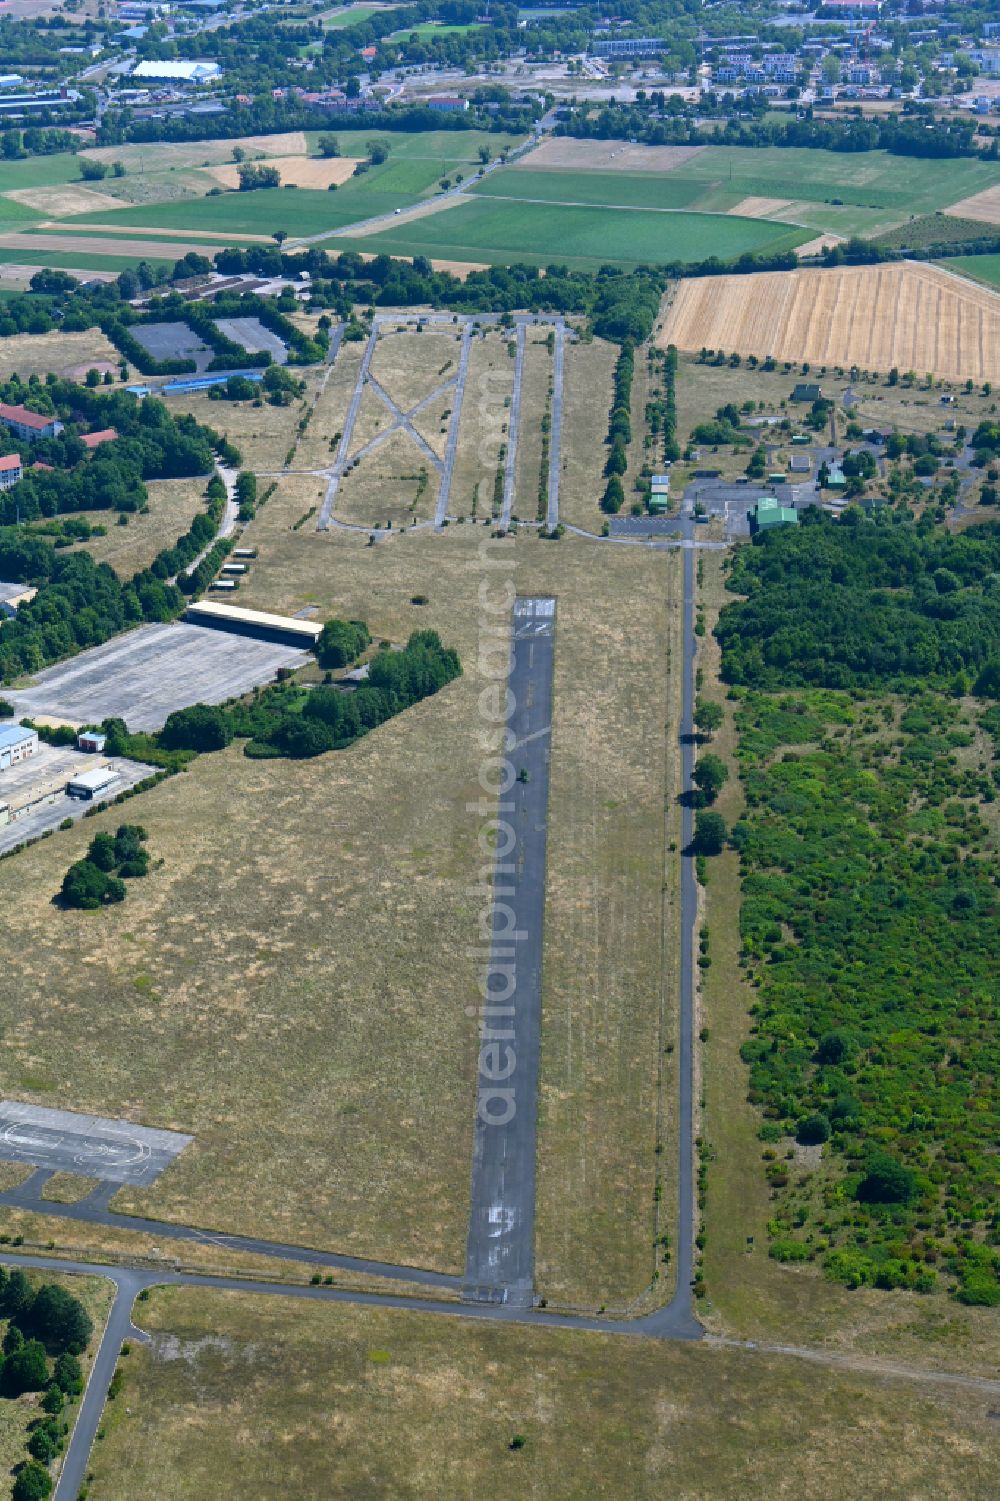 Aerial photograph Geldersheim - Runway with tarmac terrain of airfield Conn Barracks in Geldersheim in the state Bavaria, Germany